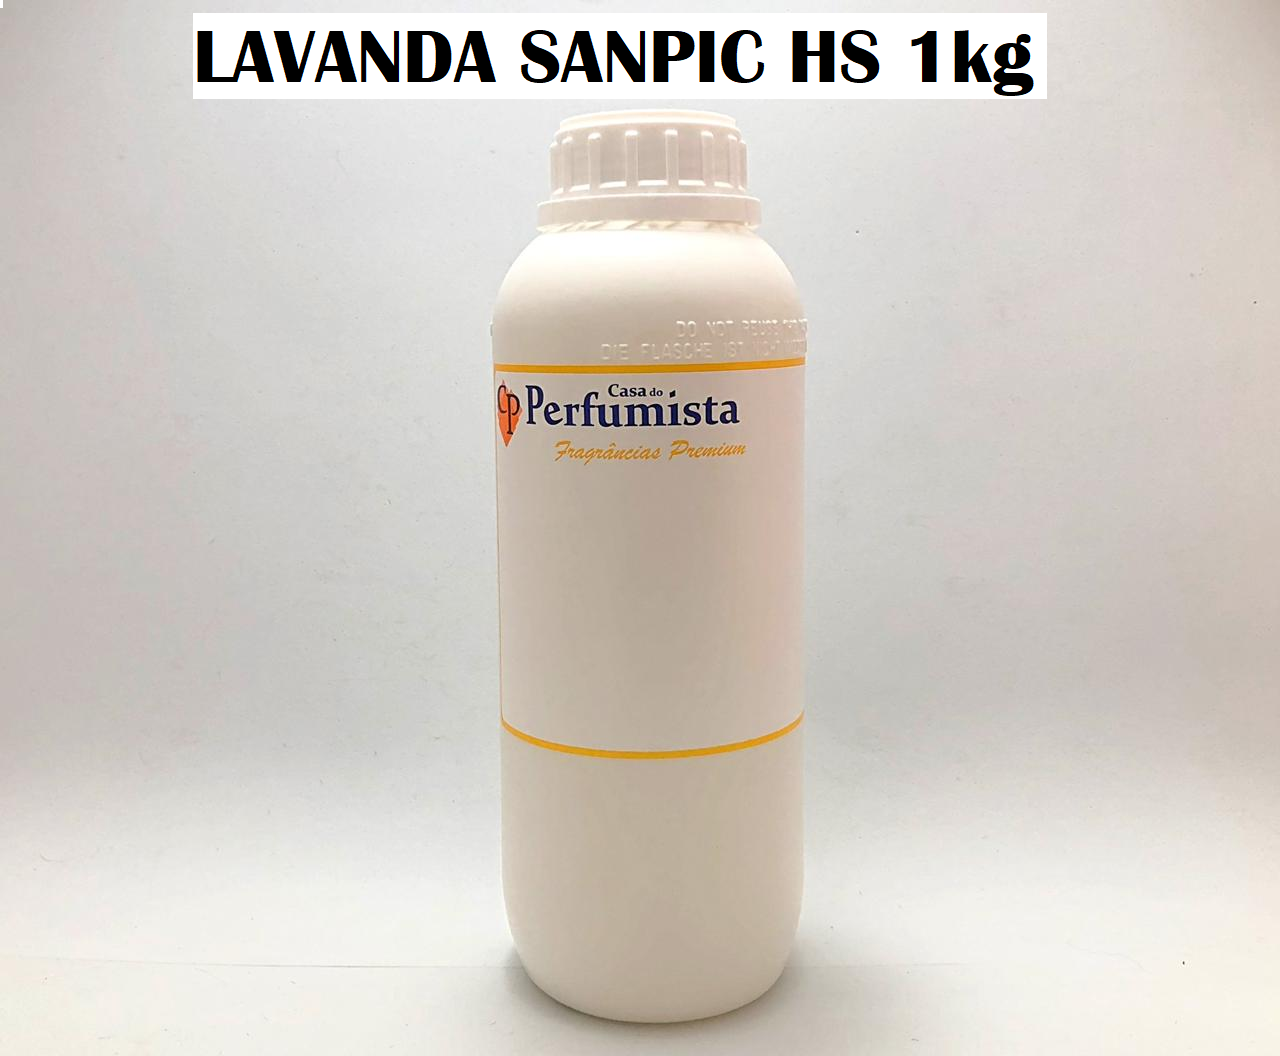 LAVANDA SANPIC HS - 1kg